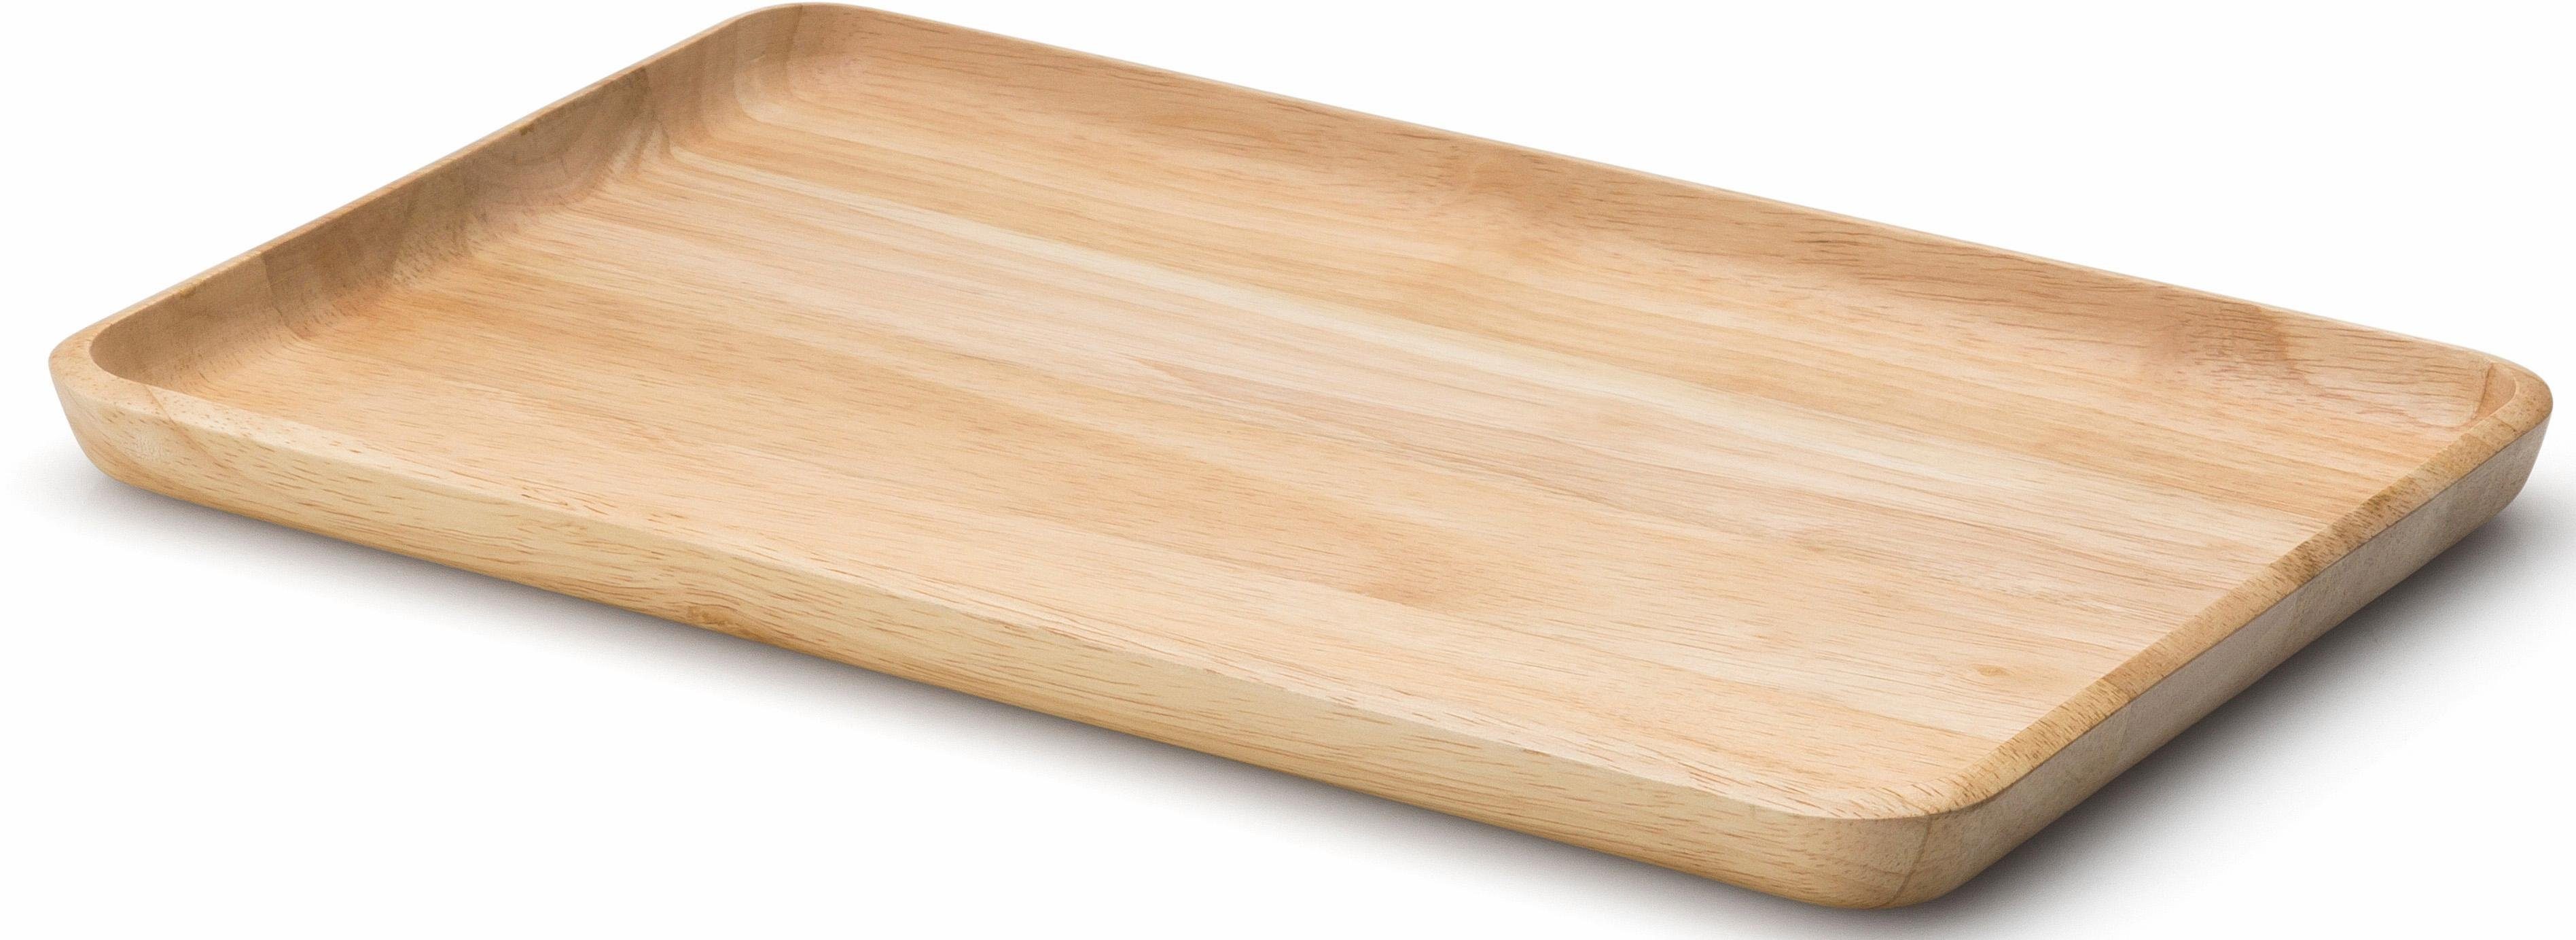 Continenta Tablett, Holz, (1-tlg), Handarbeit, Aus von Dingen, eine und Holzblock sind Rand optimal den Boden gearbeitet Einheit einem kleinen Transport für 